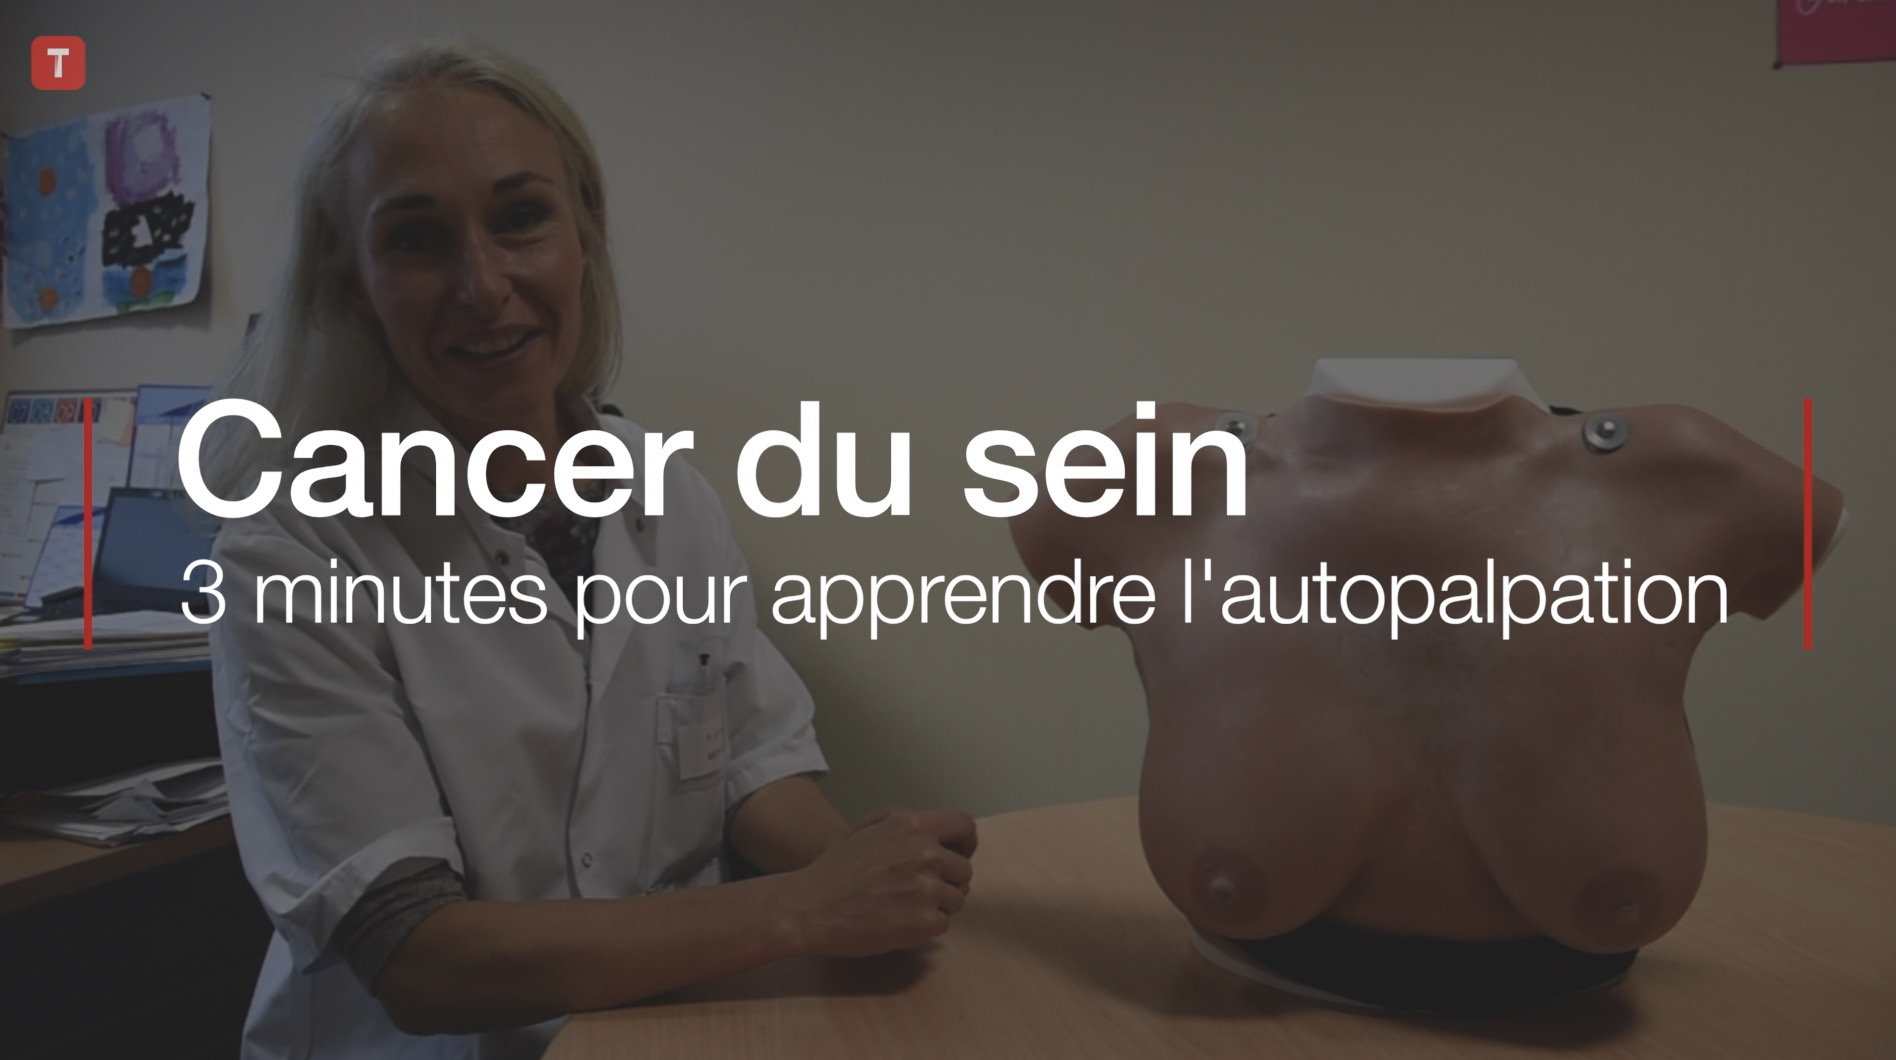 Cancer du sein : 3 minutes pour apprendre l'autopalpation (Le Télégramme)